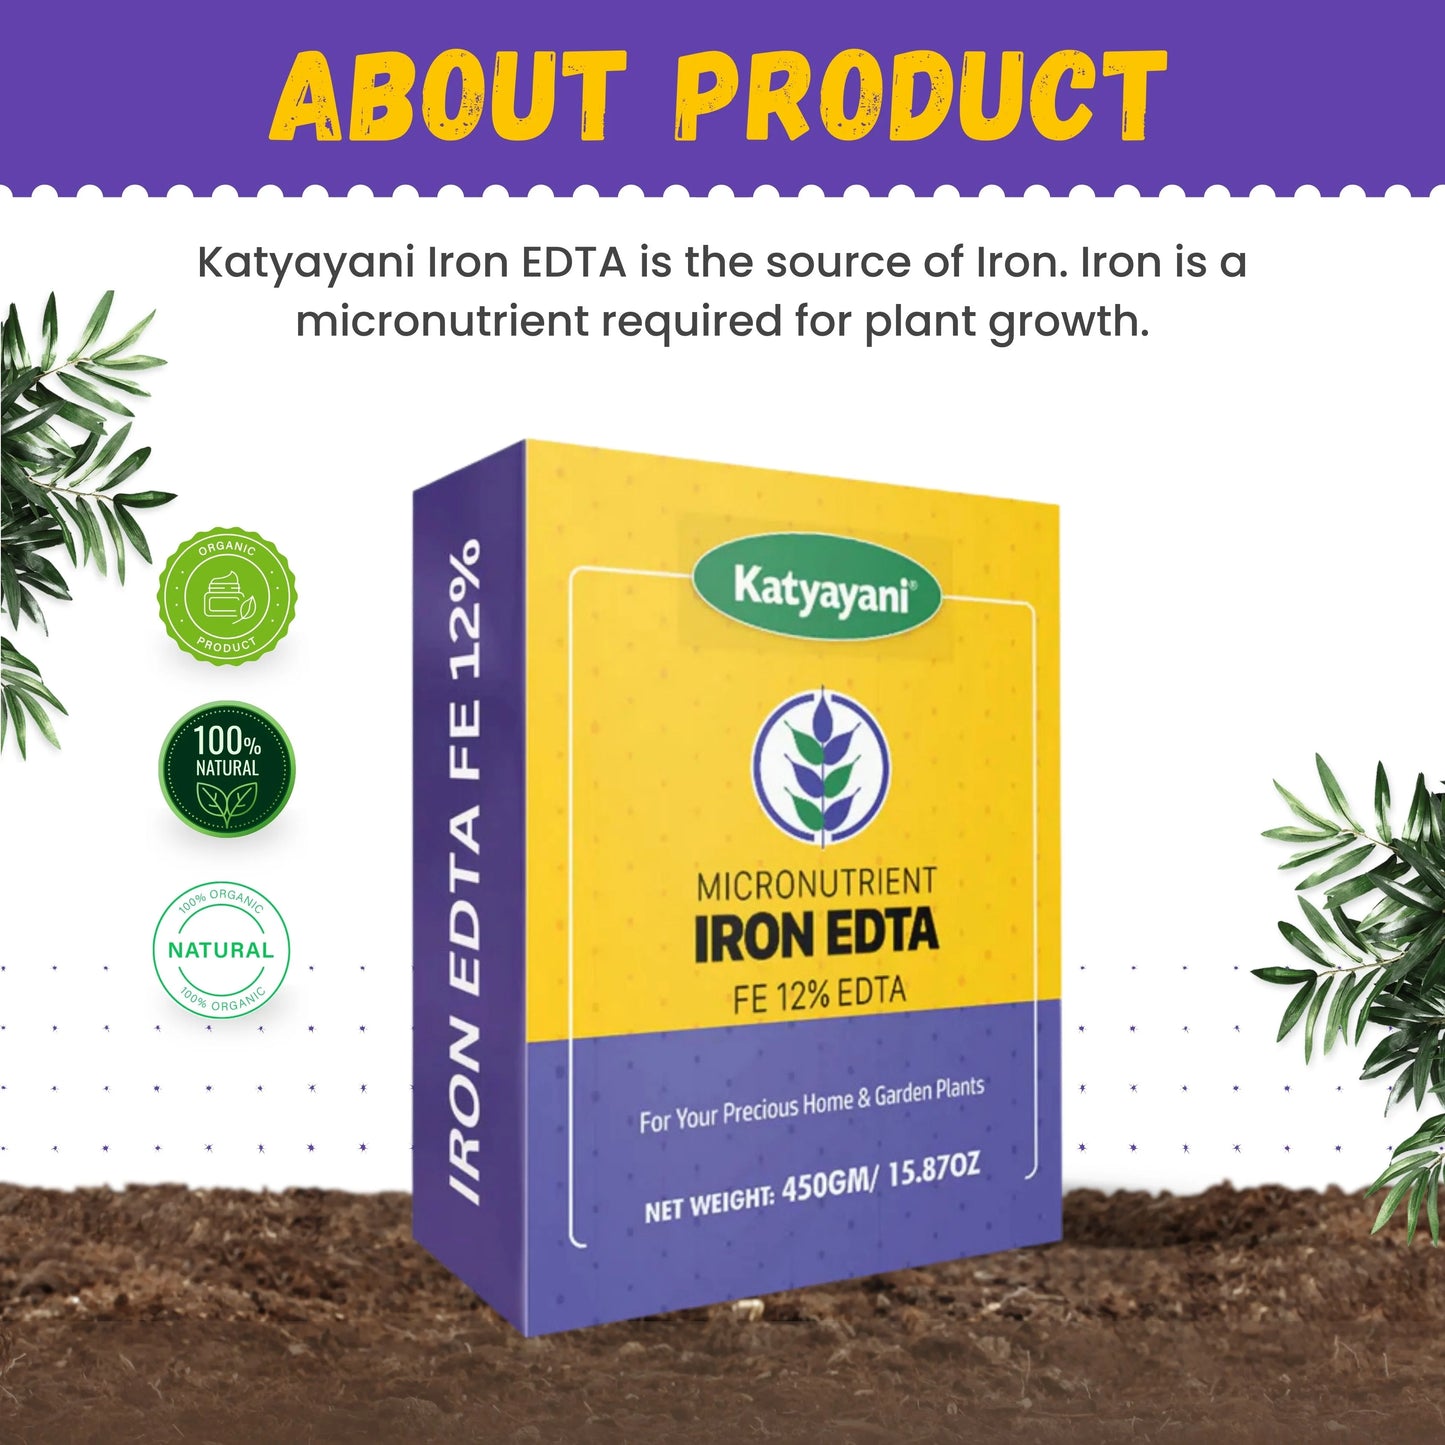 Katyayani Iron EDTA || Fe 12% EDTA about